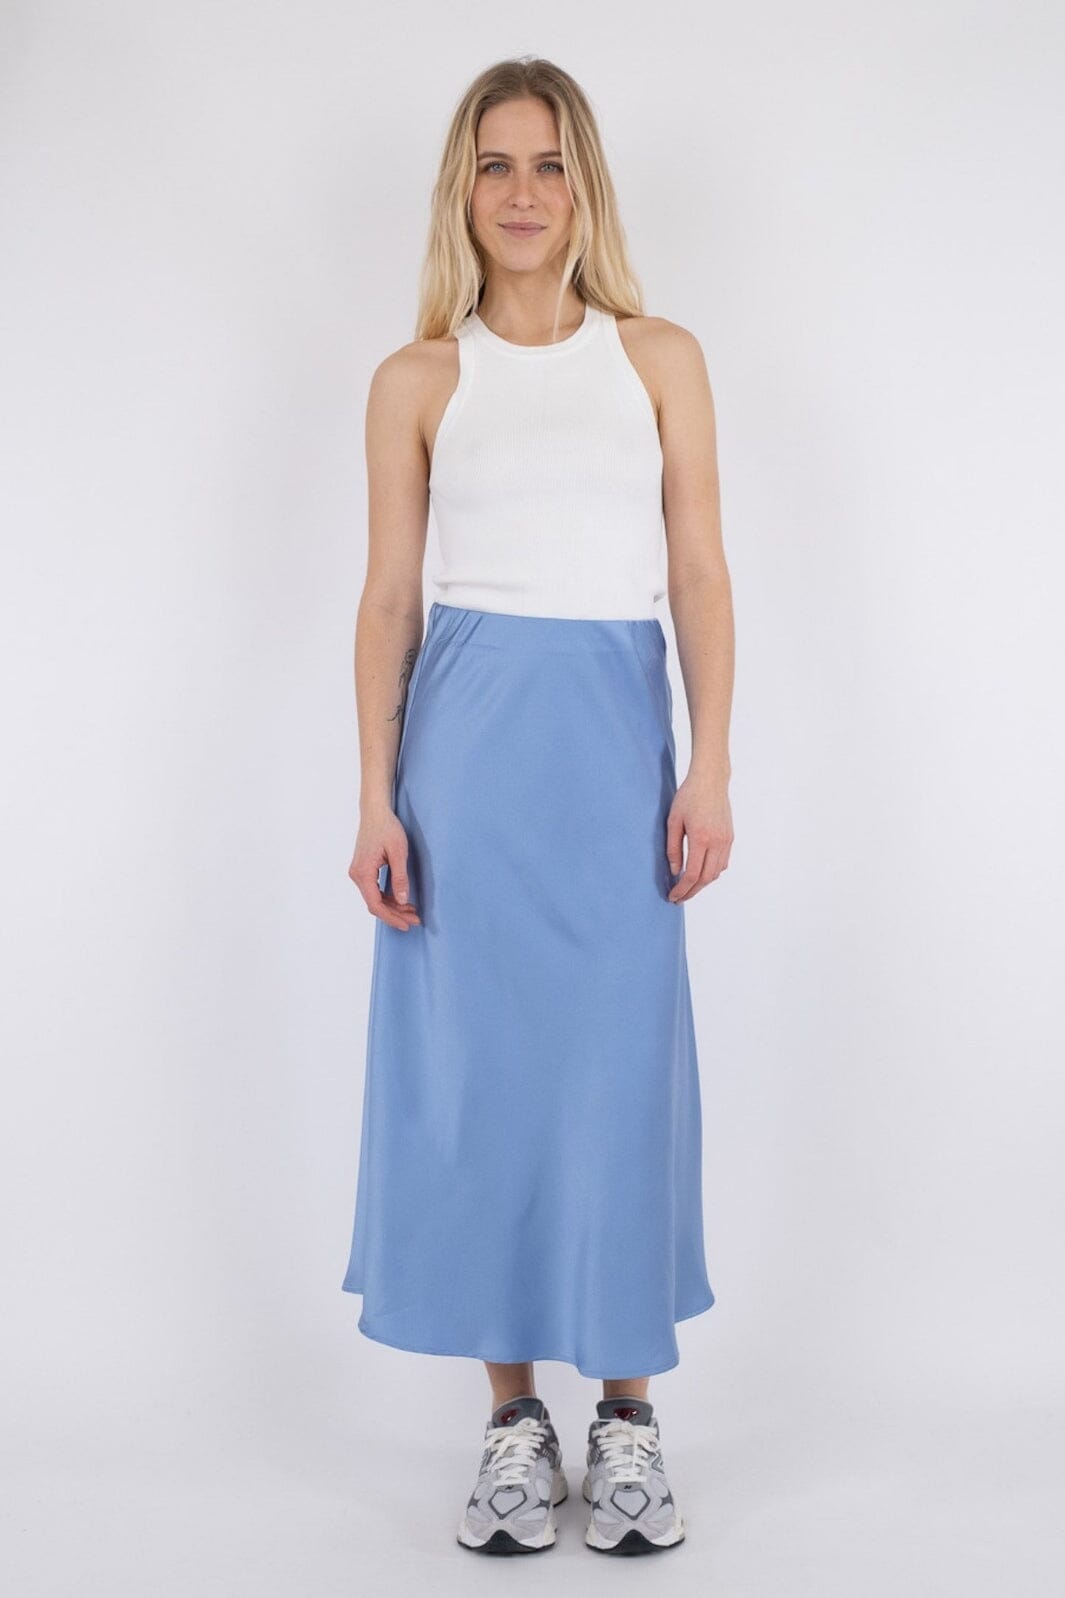 Neo Noir - Bovary Skirt - Dusty blue Nederdele 